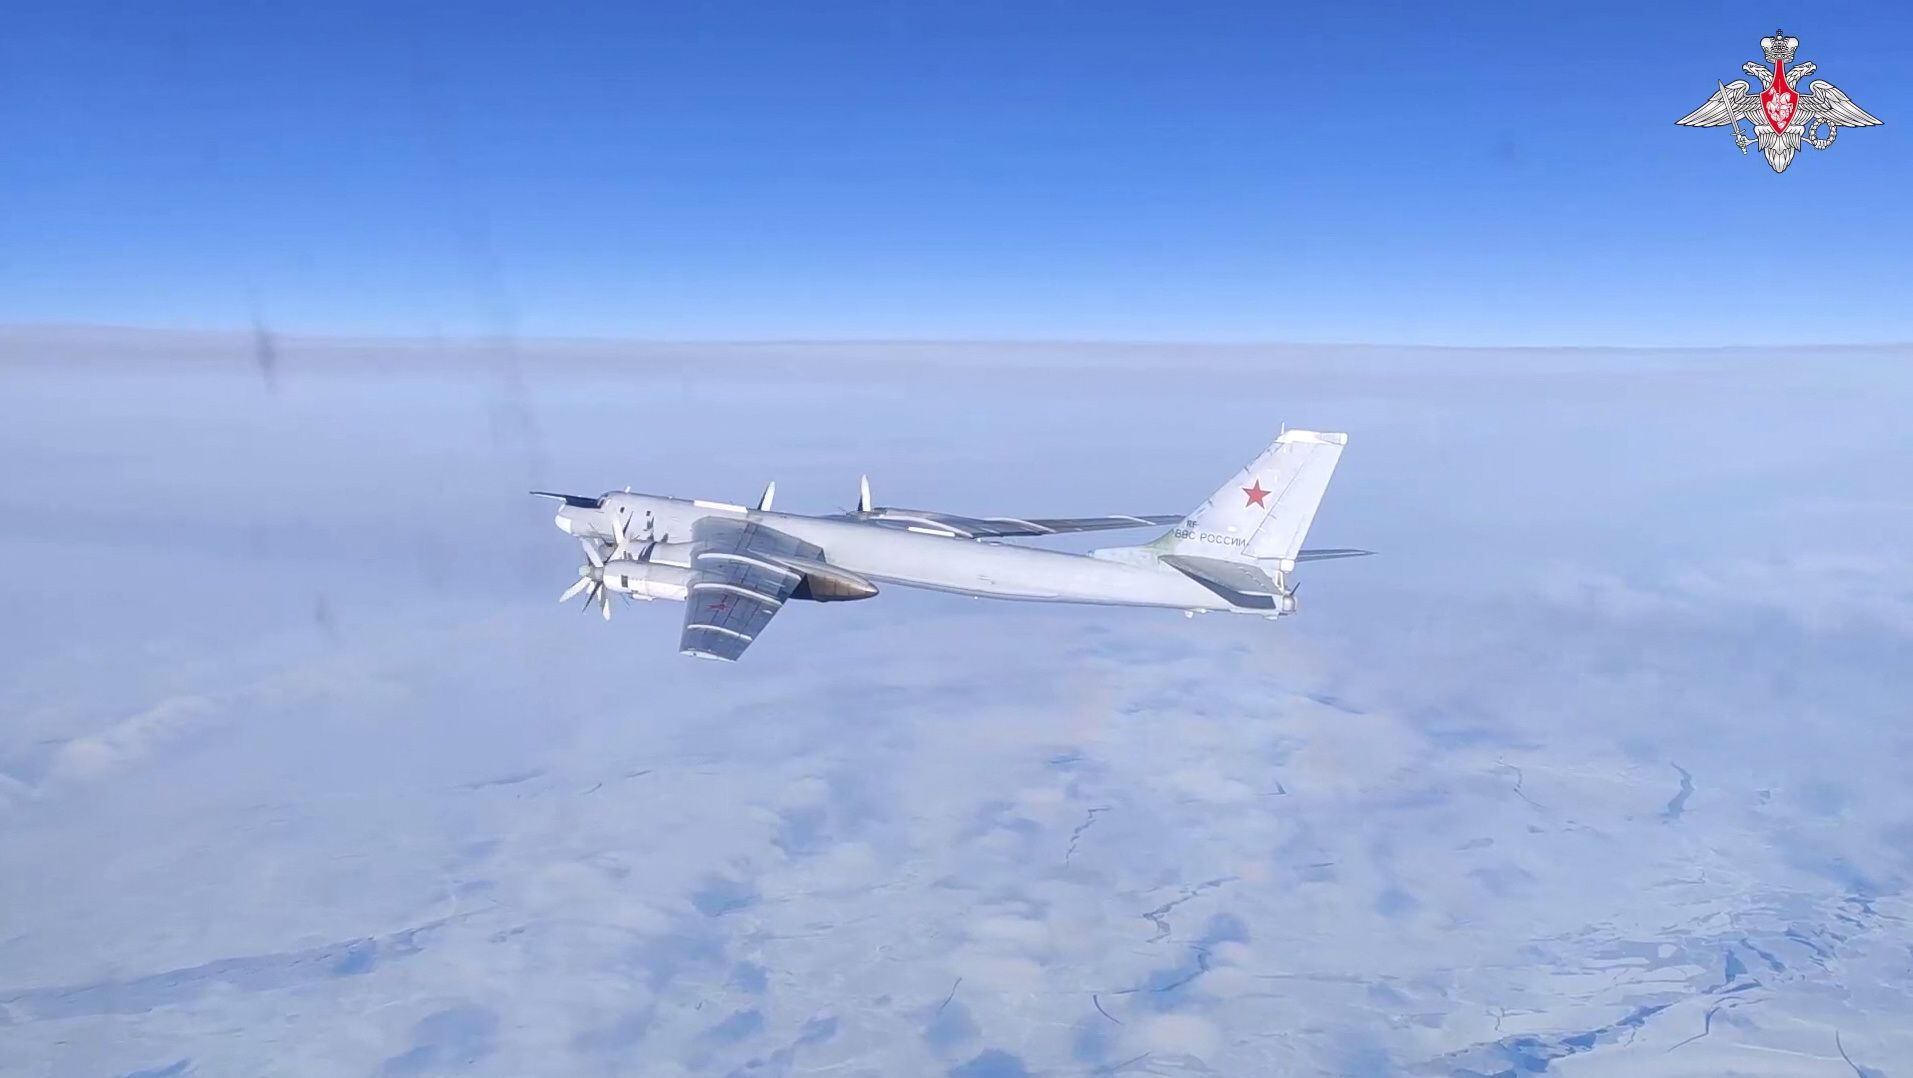 Rusia posa dos batiscafos bajo el Polo Norte en una misión territorial